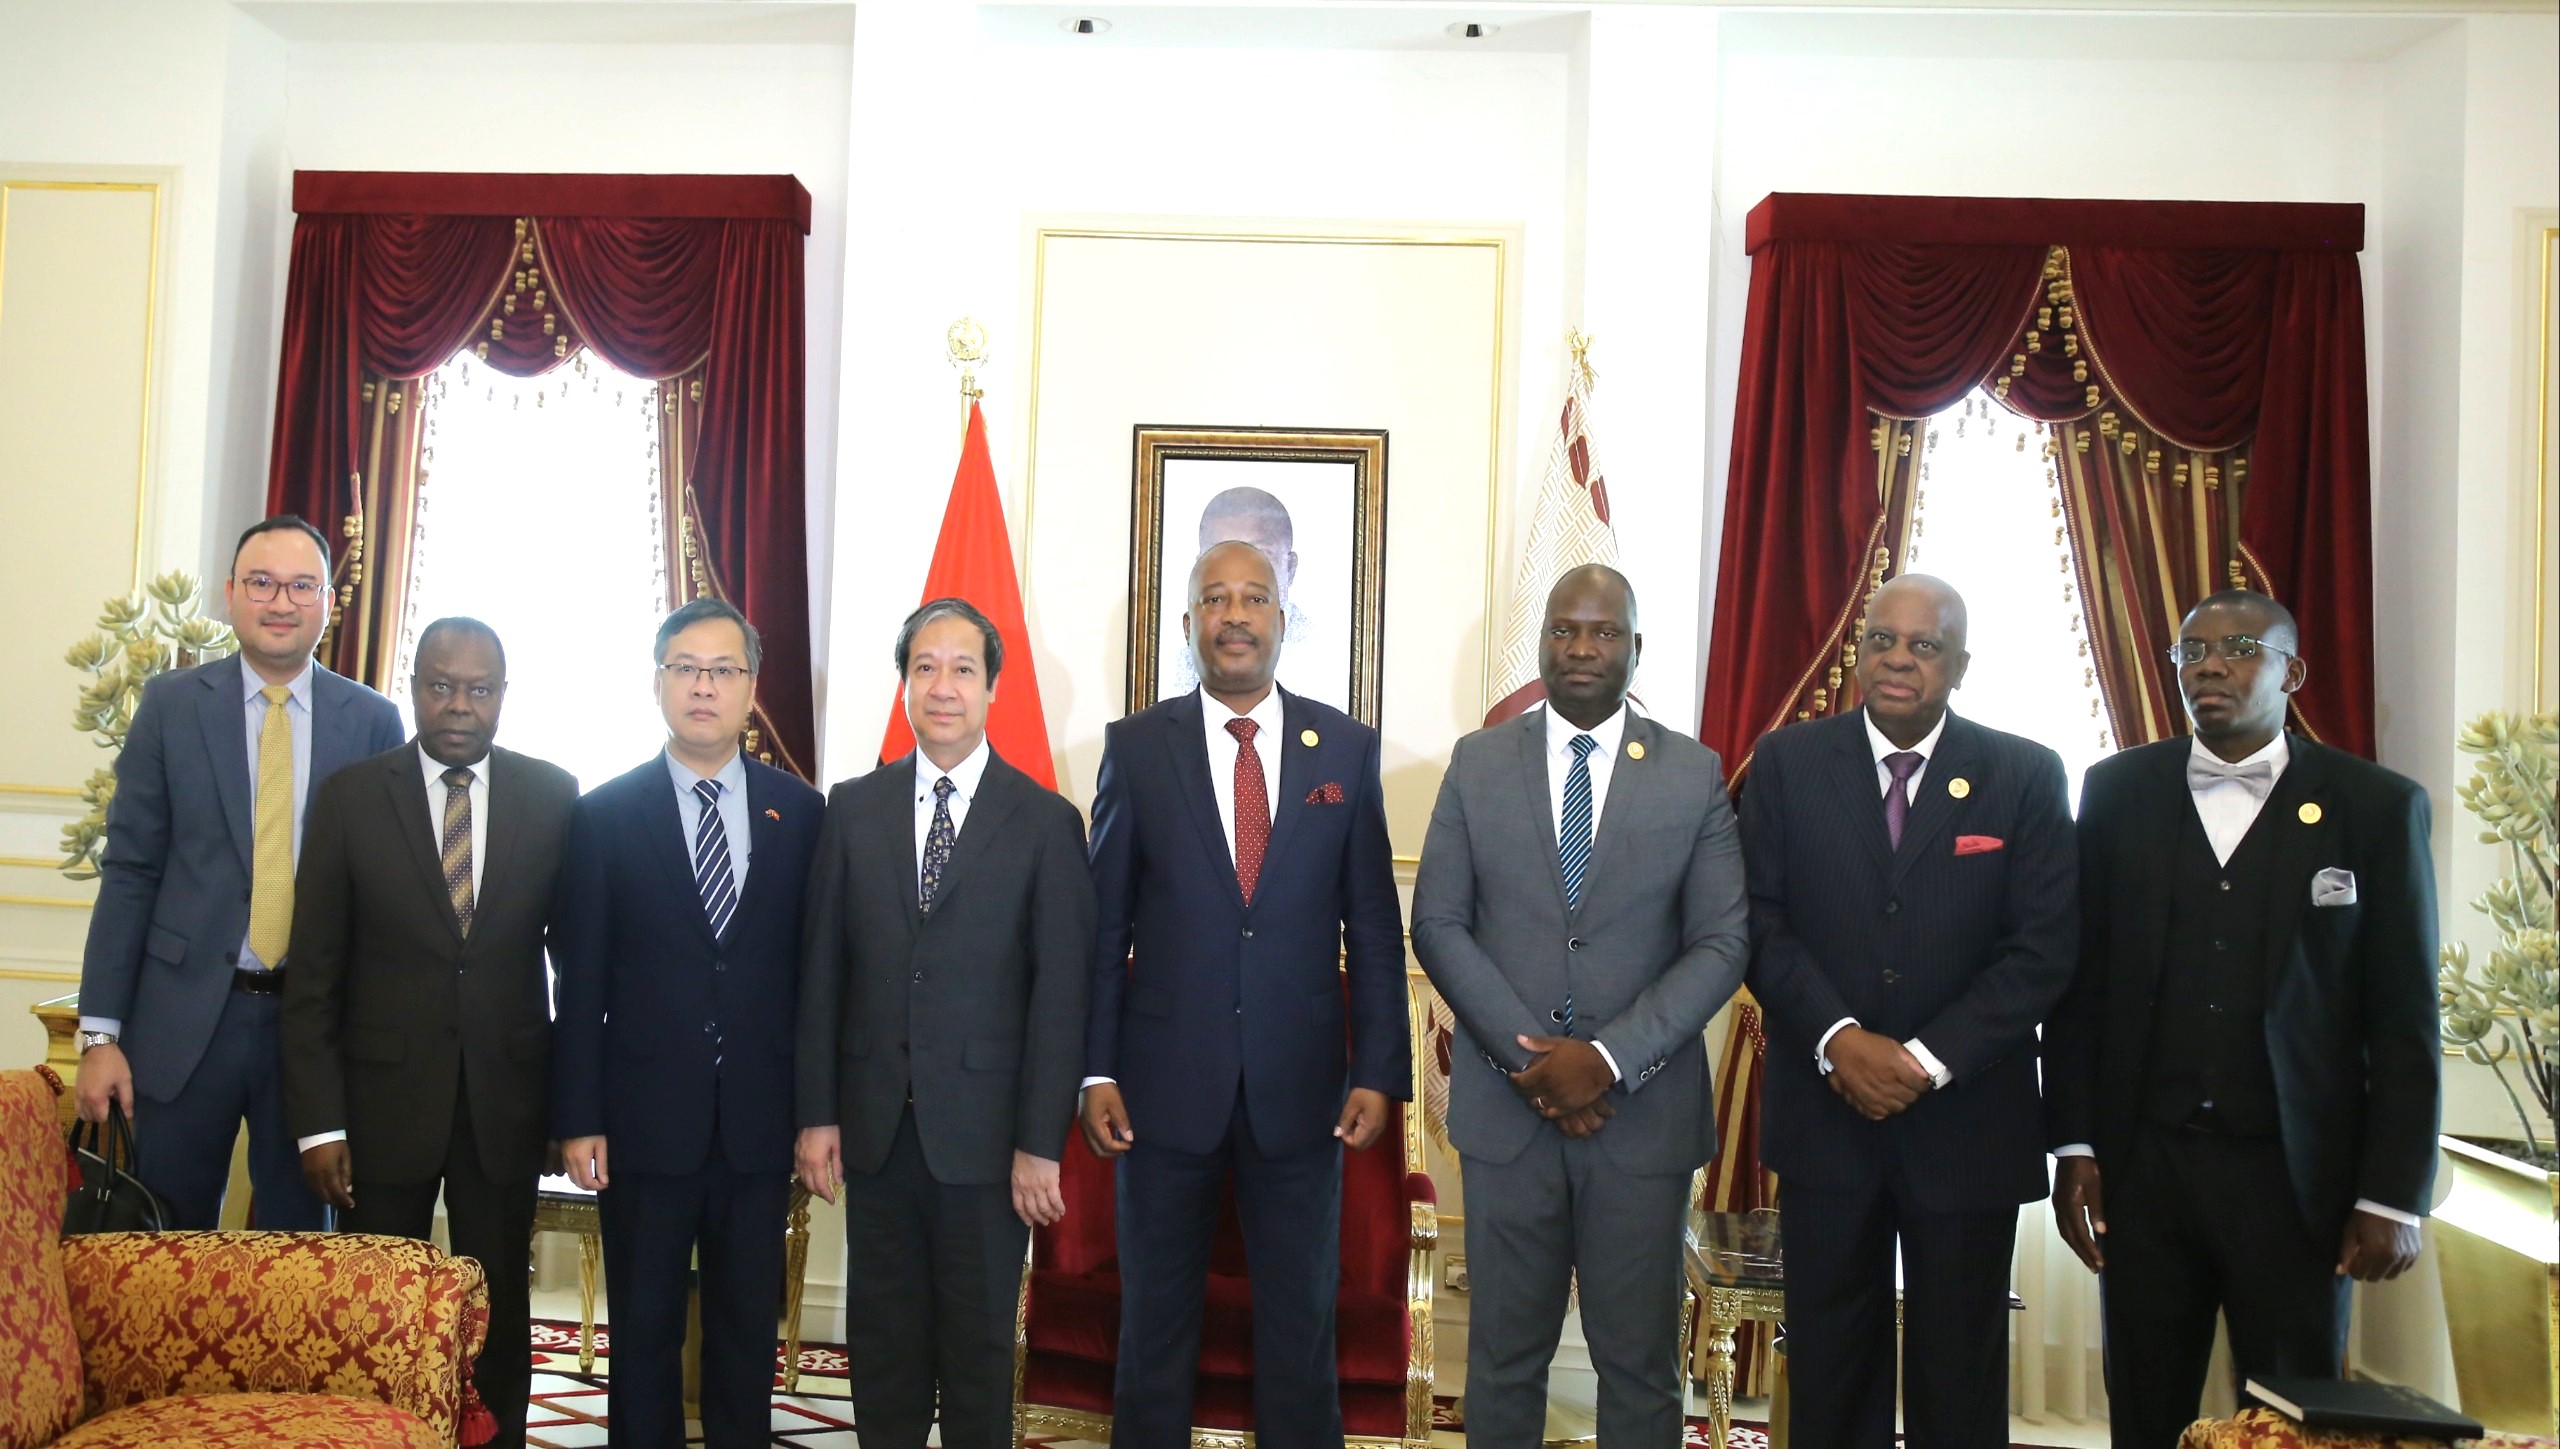 Phó Chủ tịch Thường trực Quốc hội Angola Américo António Cuononoca (thứ 4, từ phải sang) chụp ảnh lưu niệm với Bộ trưởng Nguyễn Kim Sơn.